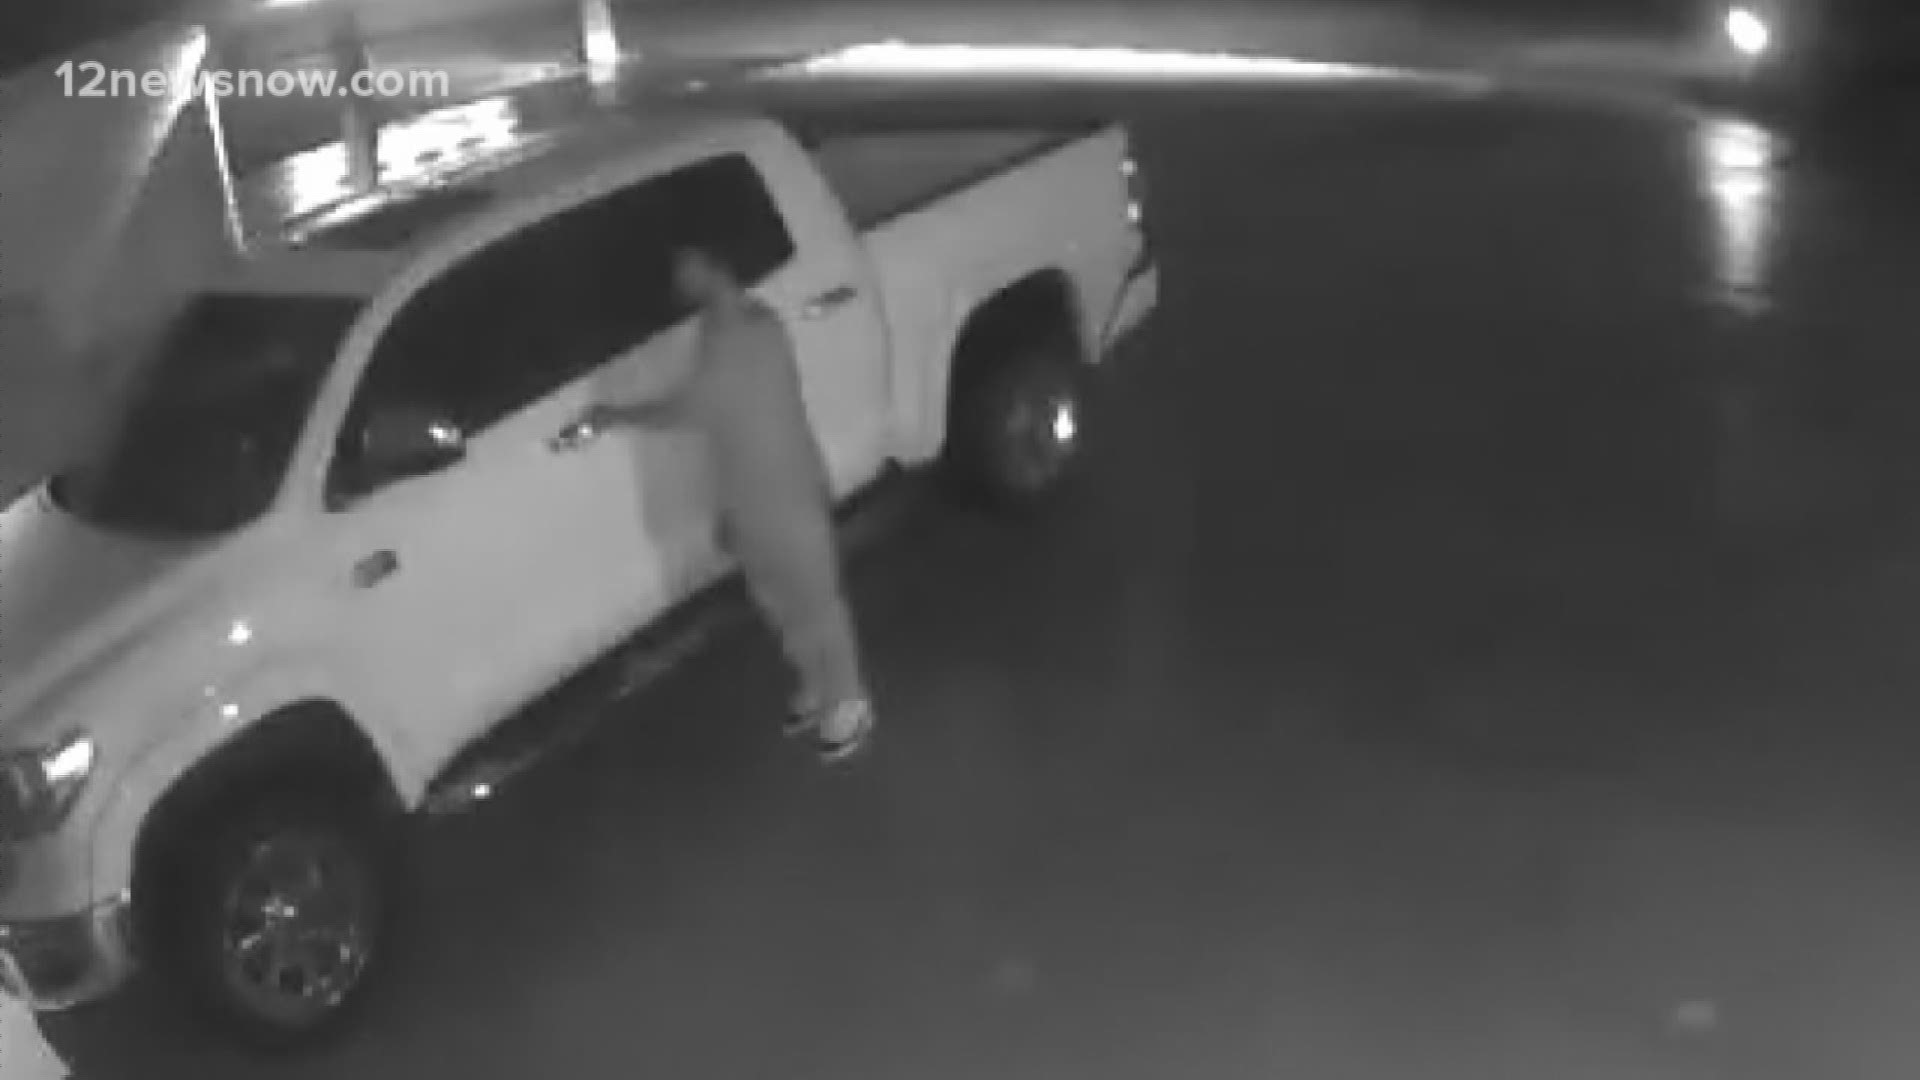 Deputies seeking Nederland auto burglar caught on video